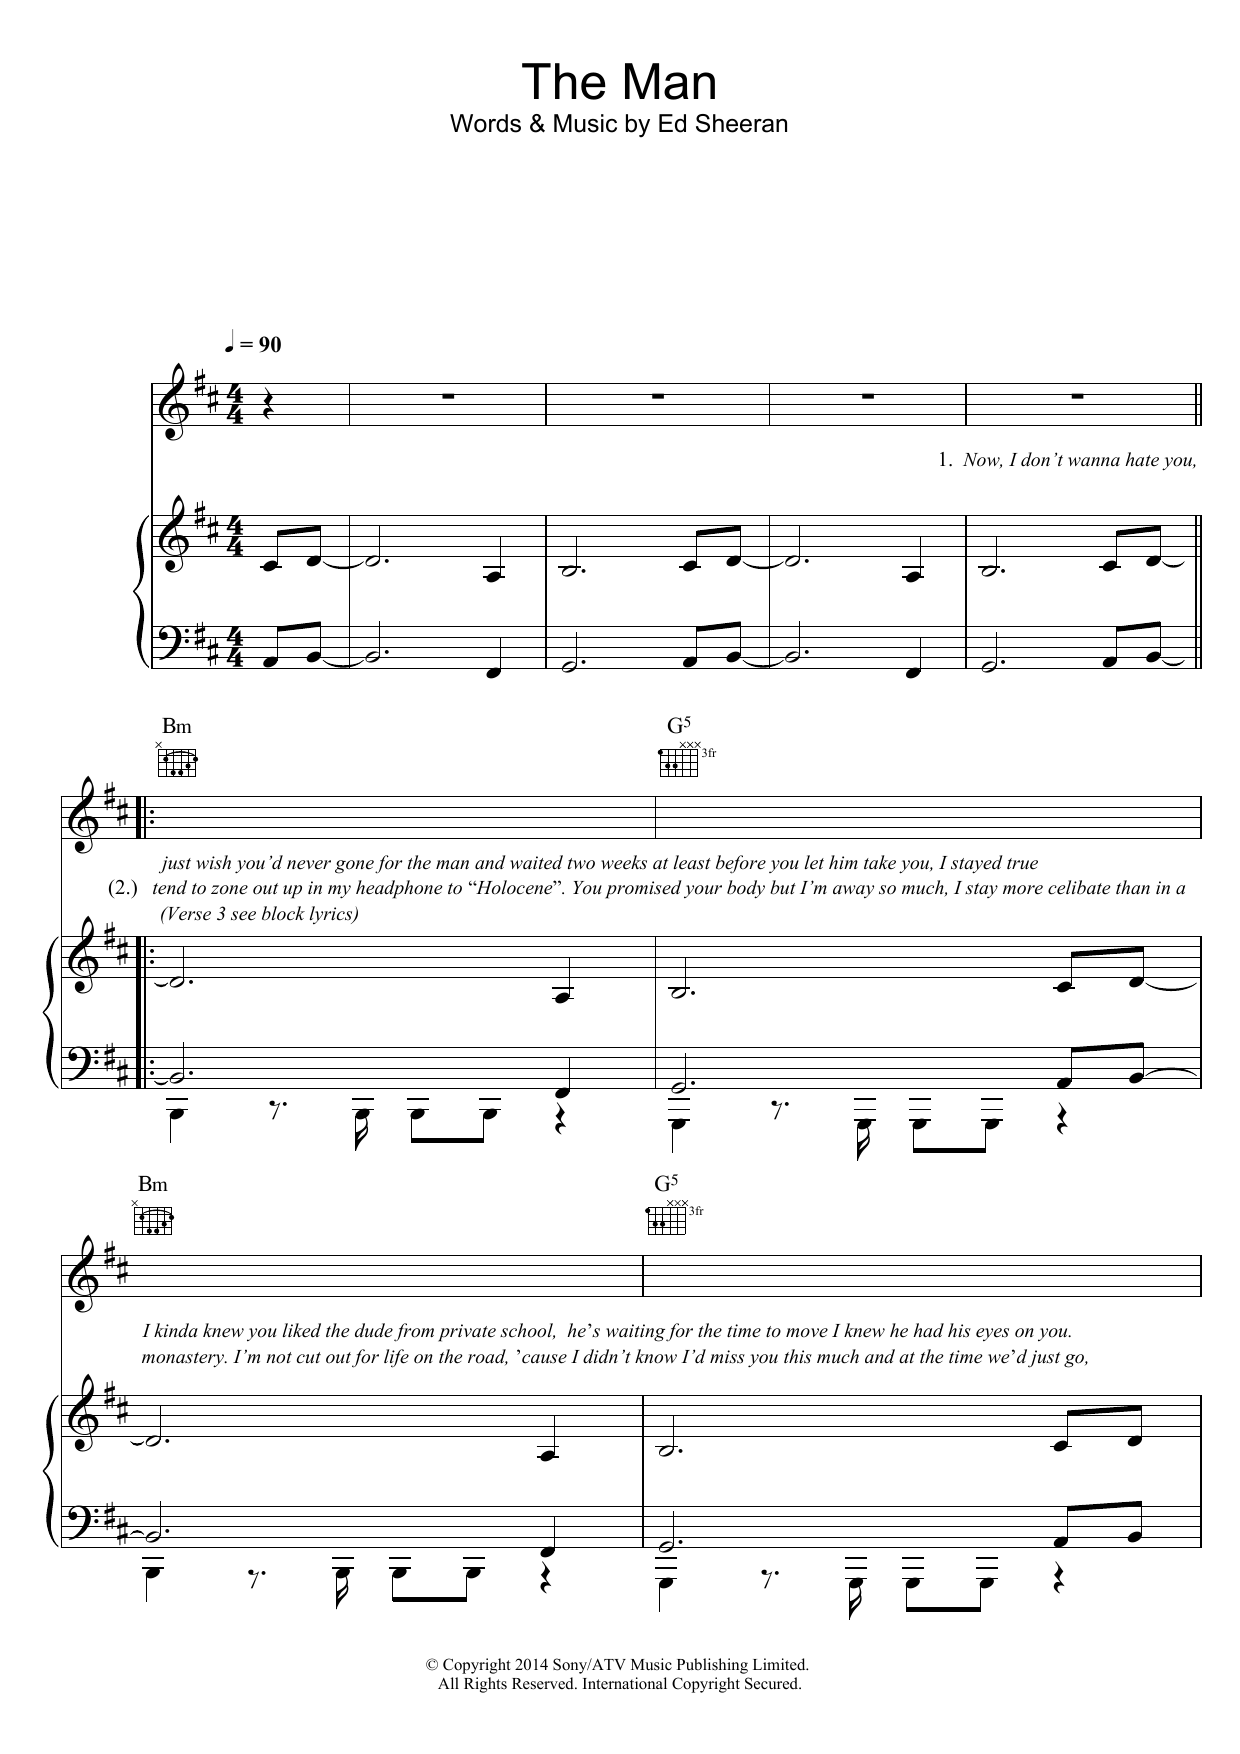 Ed Sheeran The Man Sheet Music Notes & Chords for Lyrics & Chords - Download or Print PDF